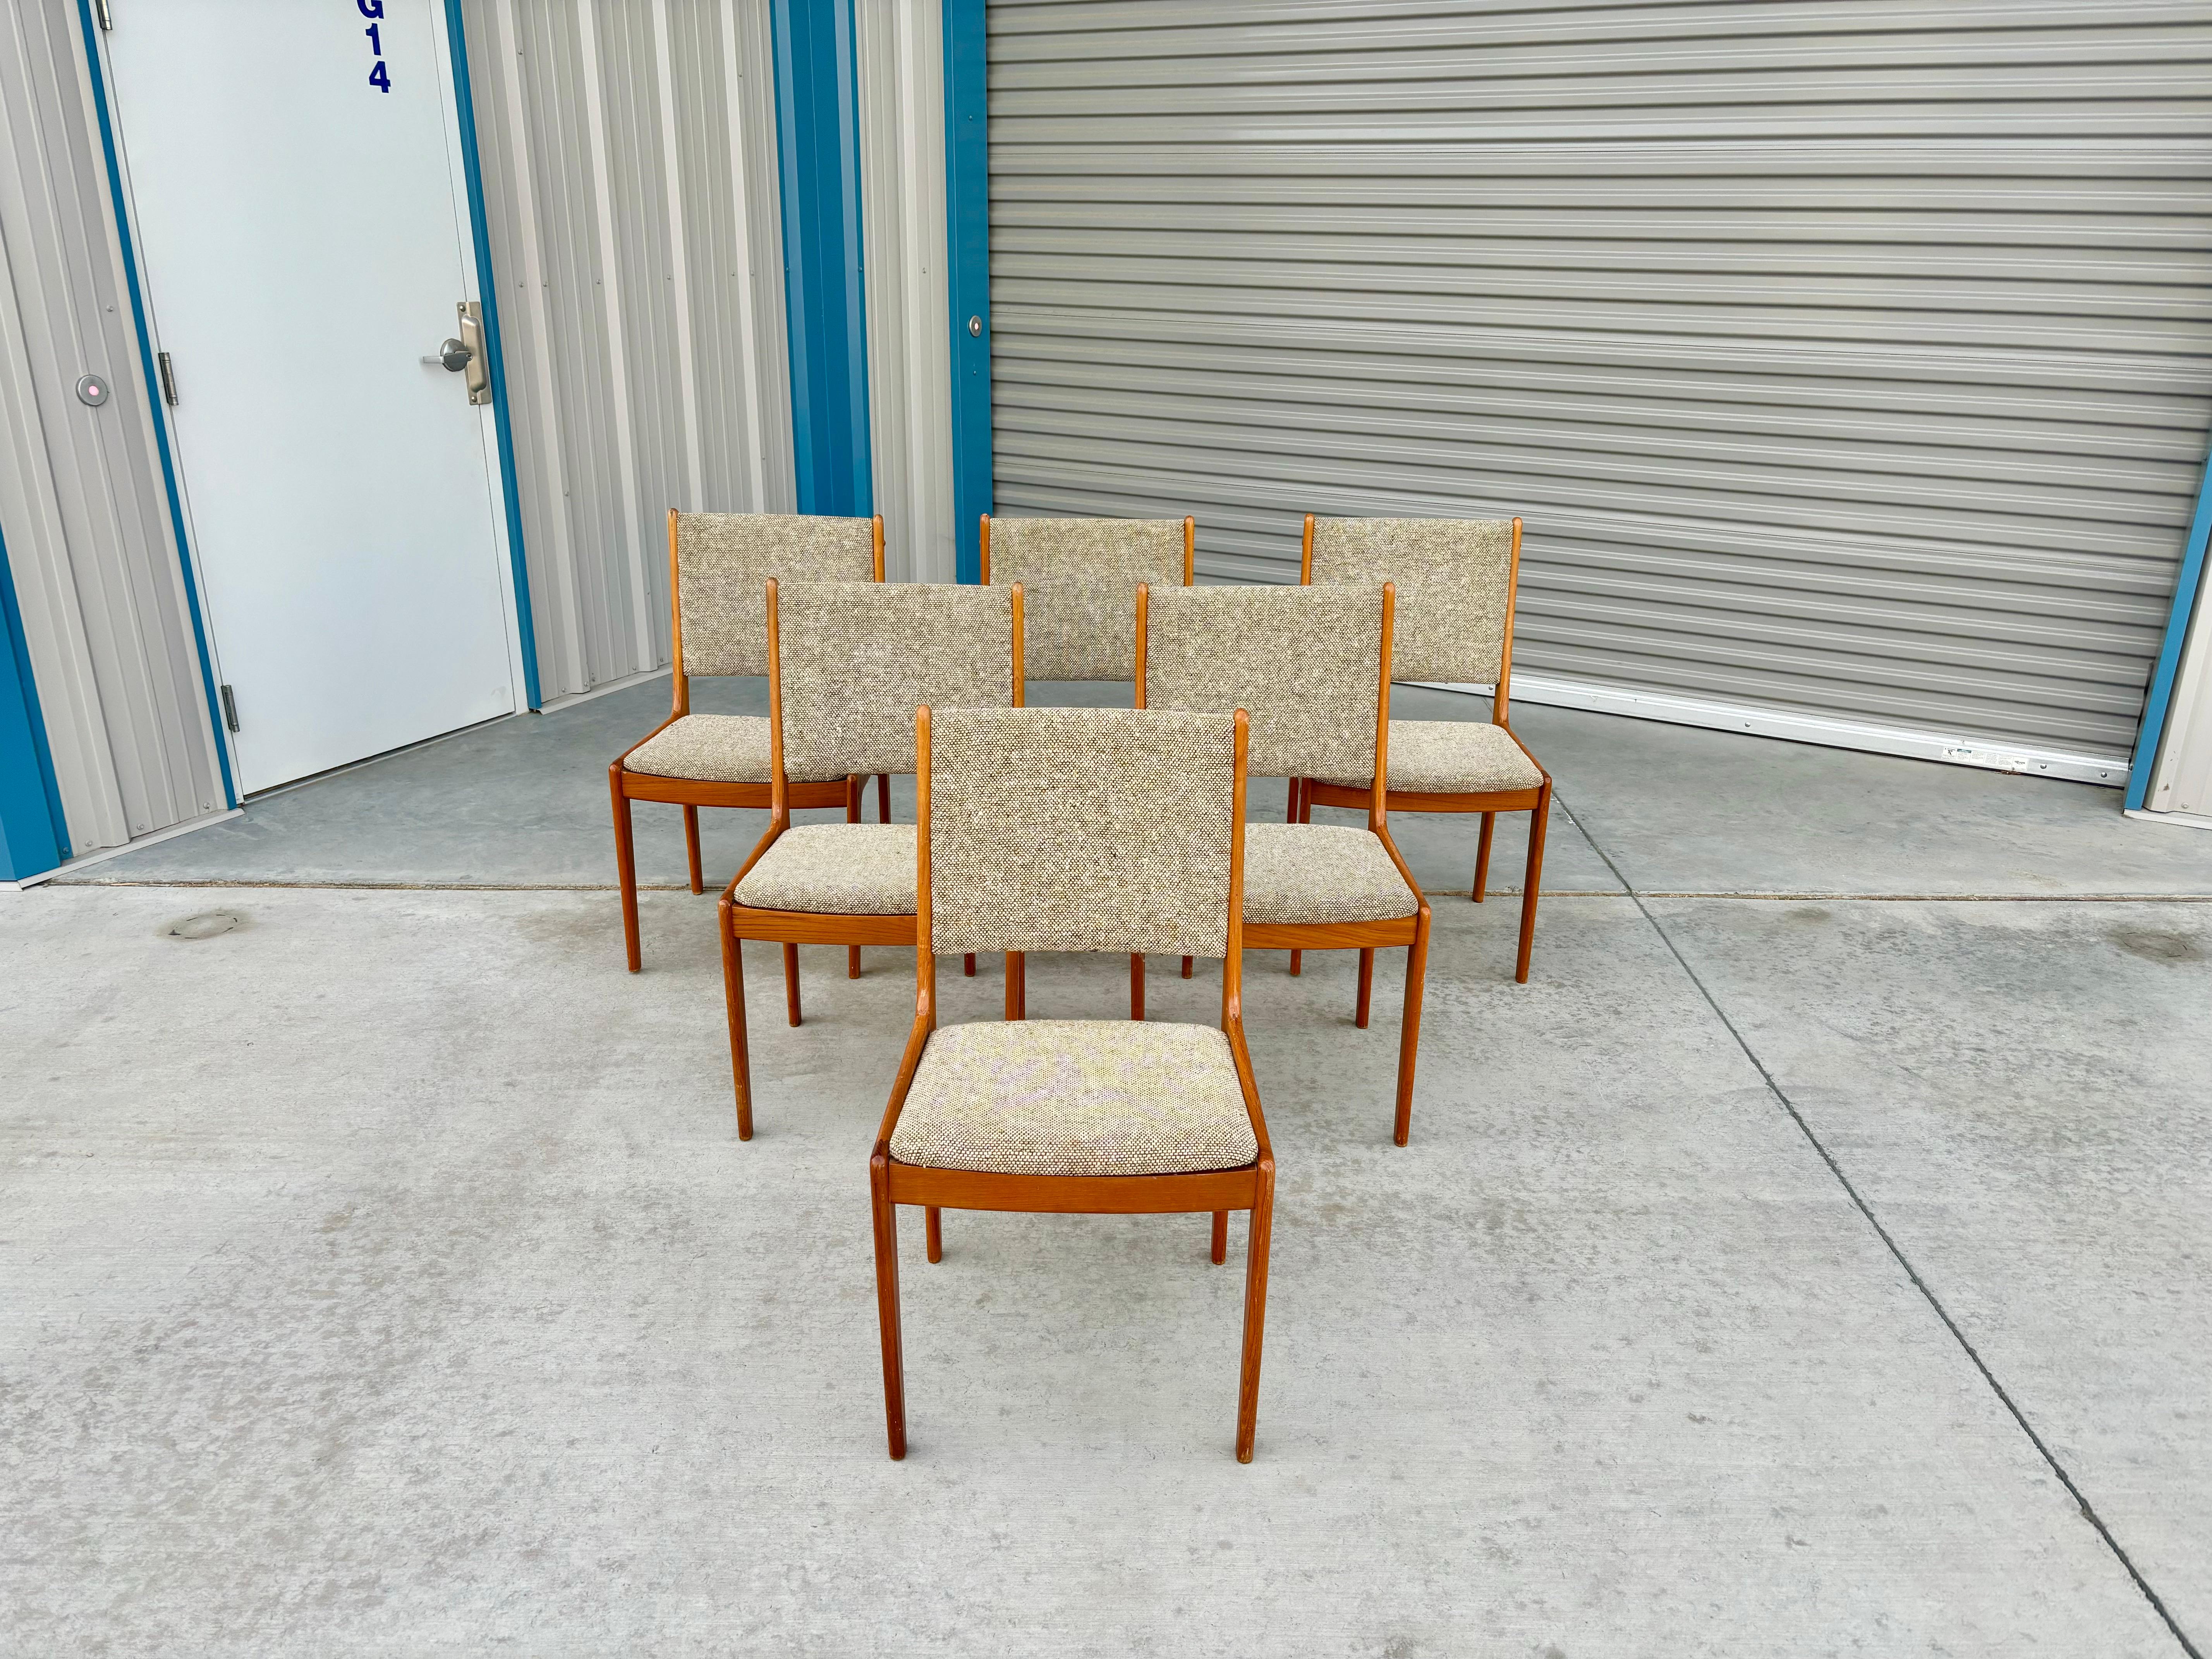 Les chaises de salle à manger danoises modernes en teck ont été conçues et fabriquées au Danemark vers les années 1960. Le cadre en teck est non seulement robuste, mais ajoute également une touche de chaleur au design, tandis que le rembourrage